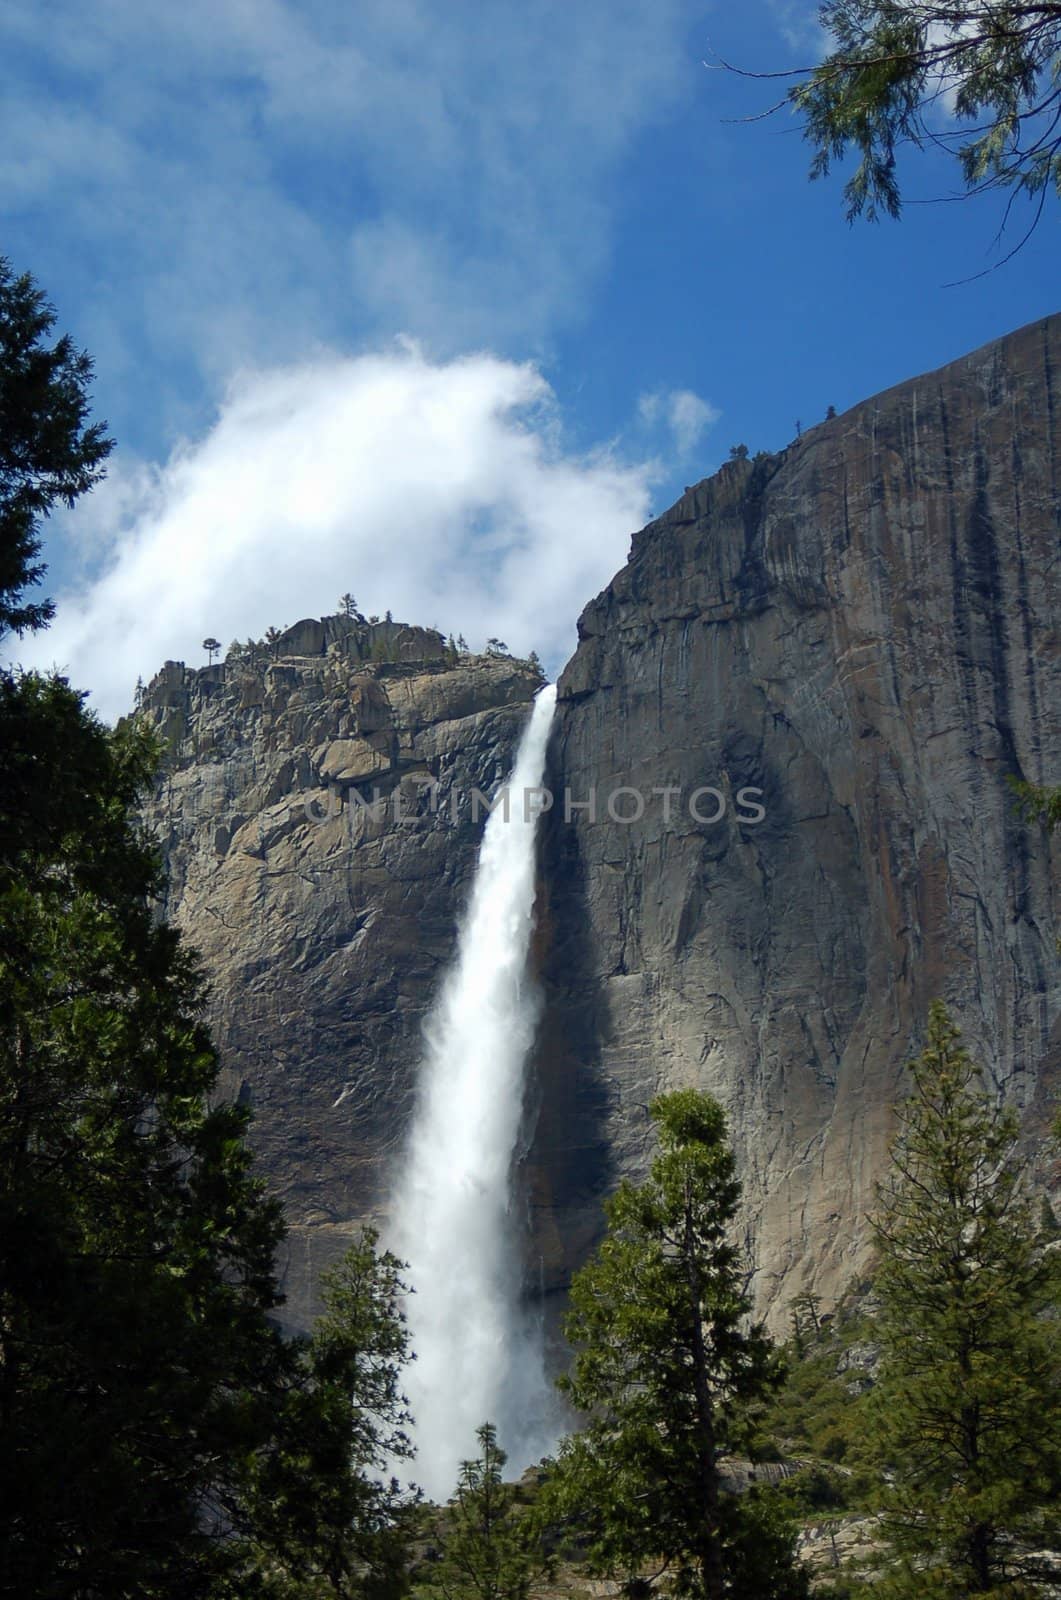 Lower Yosemite falls at Yosemite National Park California America